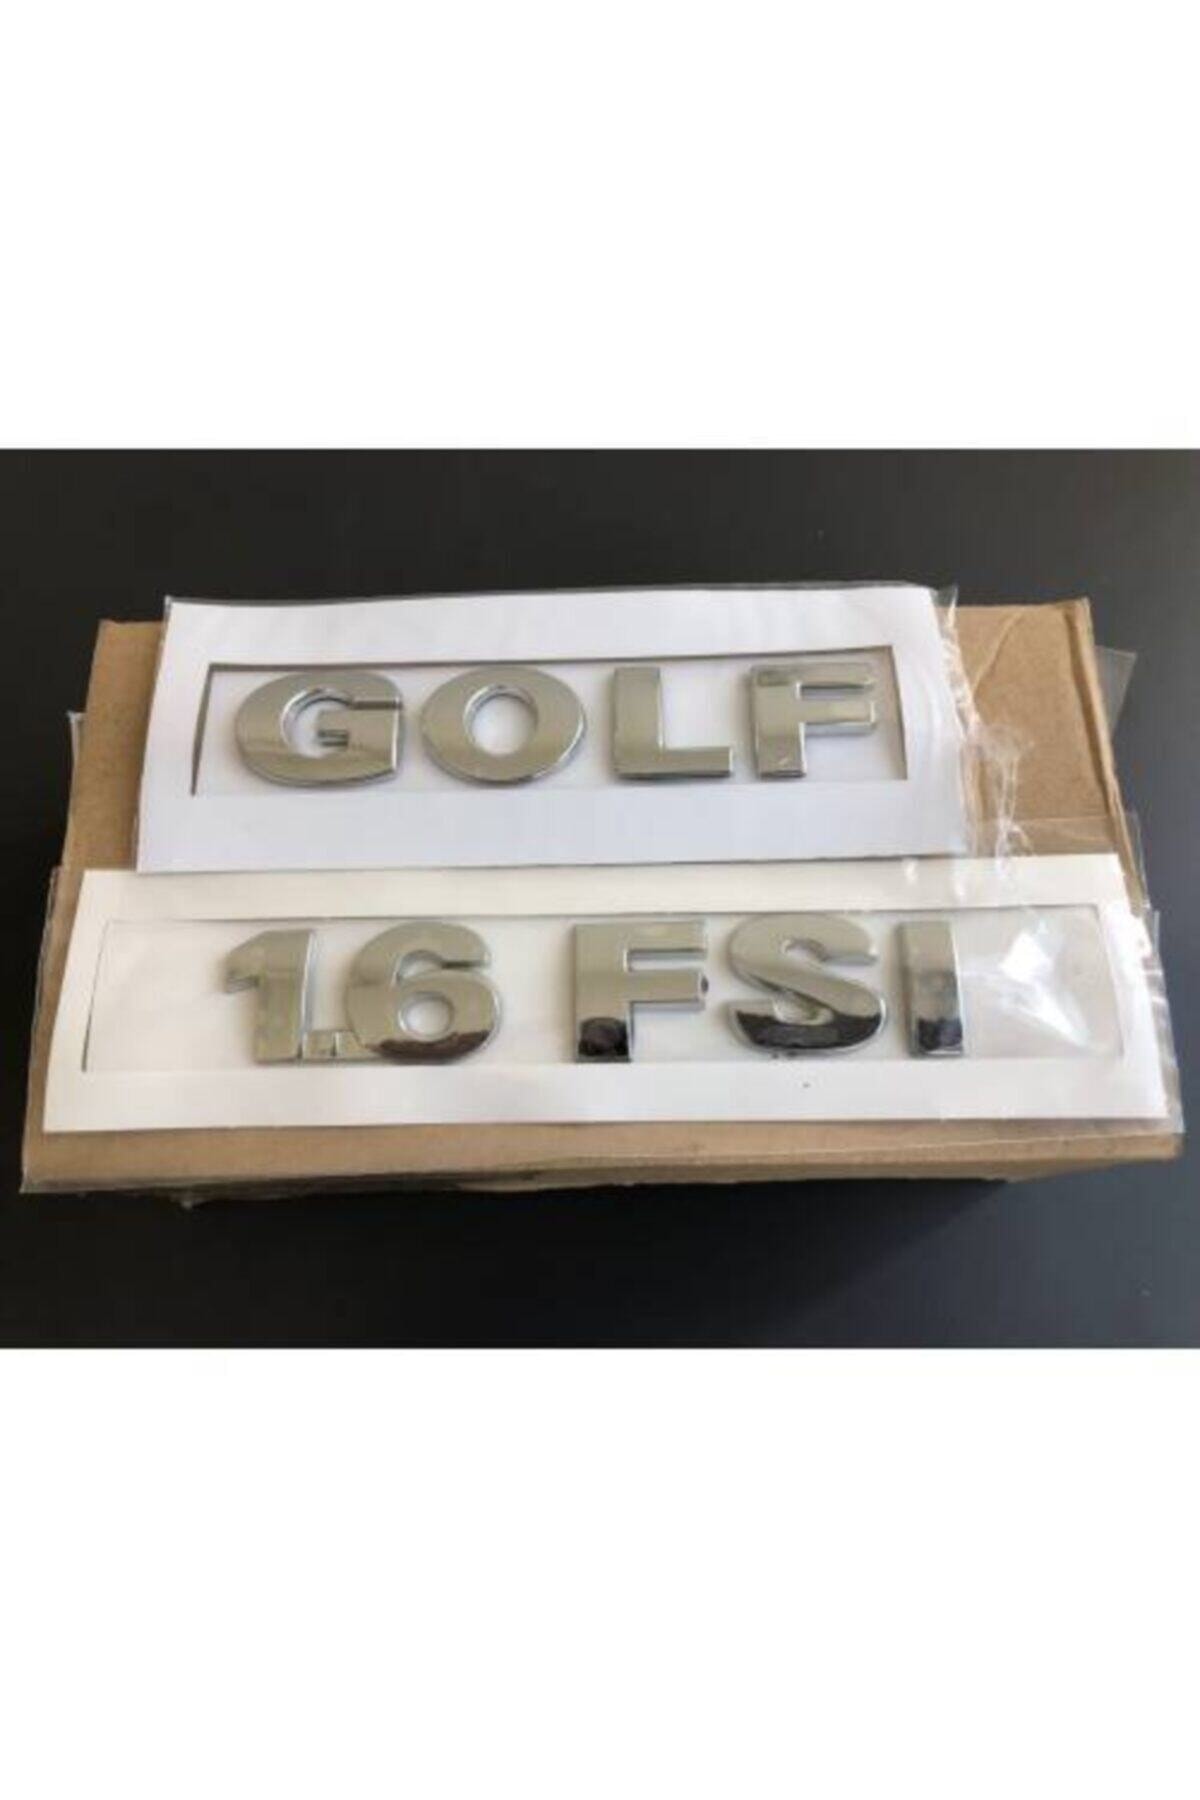 Golf - 1.6 Fsi Bagaj Yazısı - 1k0853675f---golf 4-- Golf 5 Kasa Uyumlu